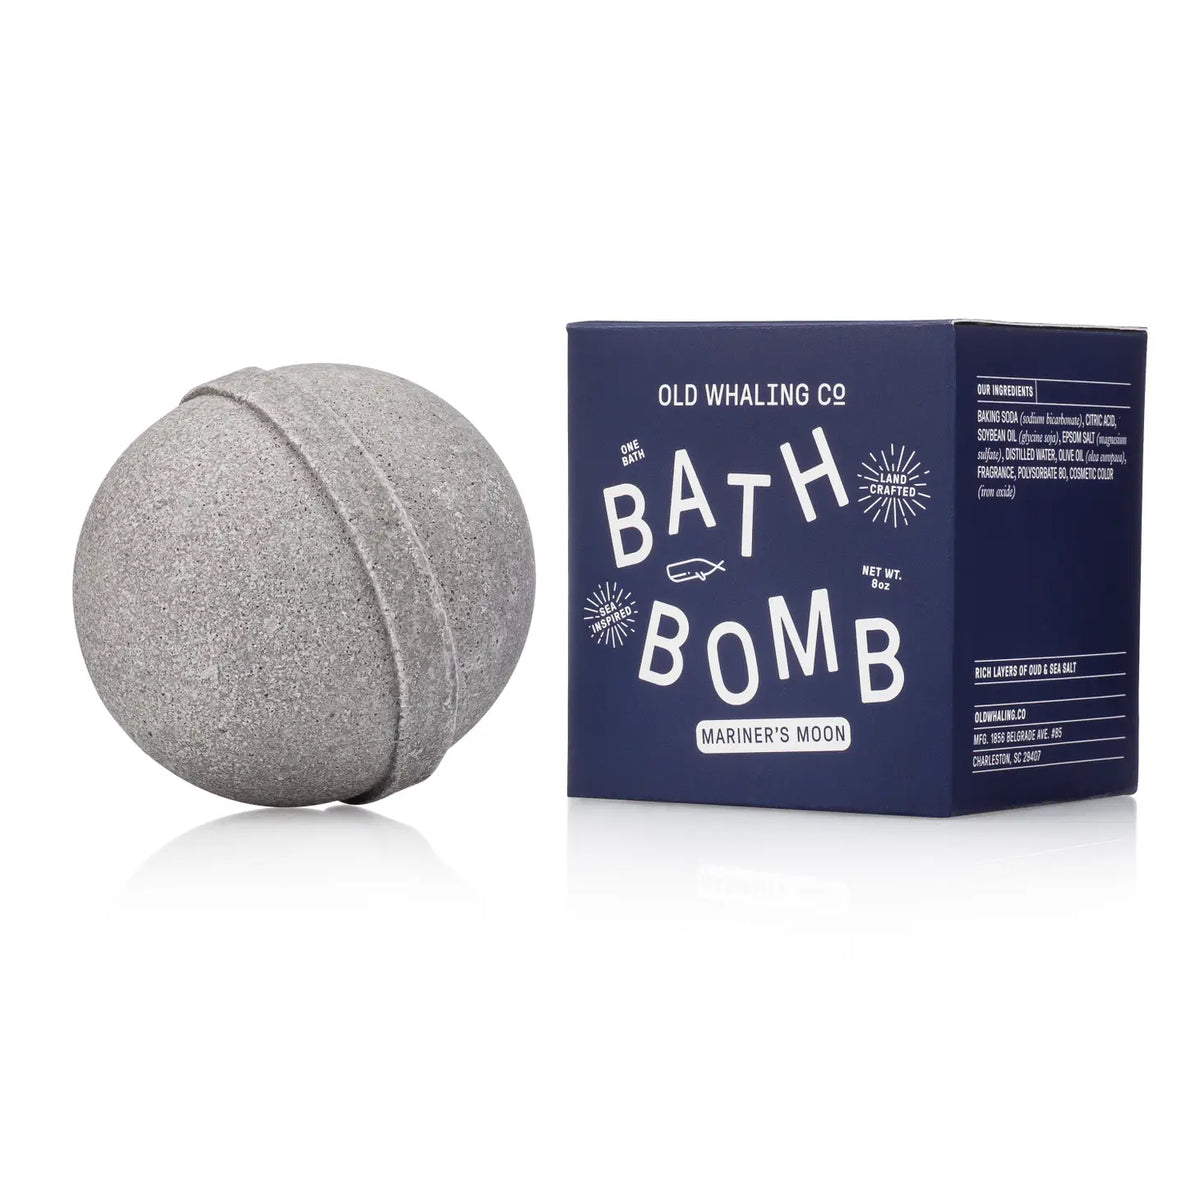 Mariners Moon Bath Bomb